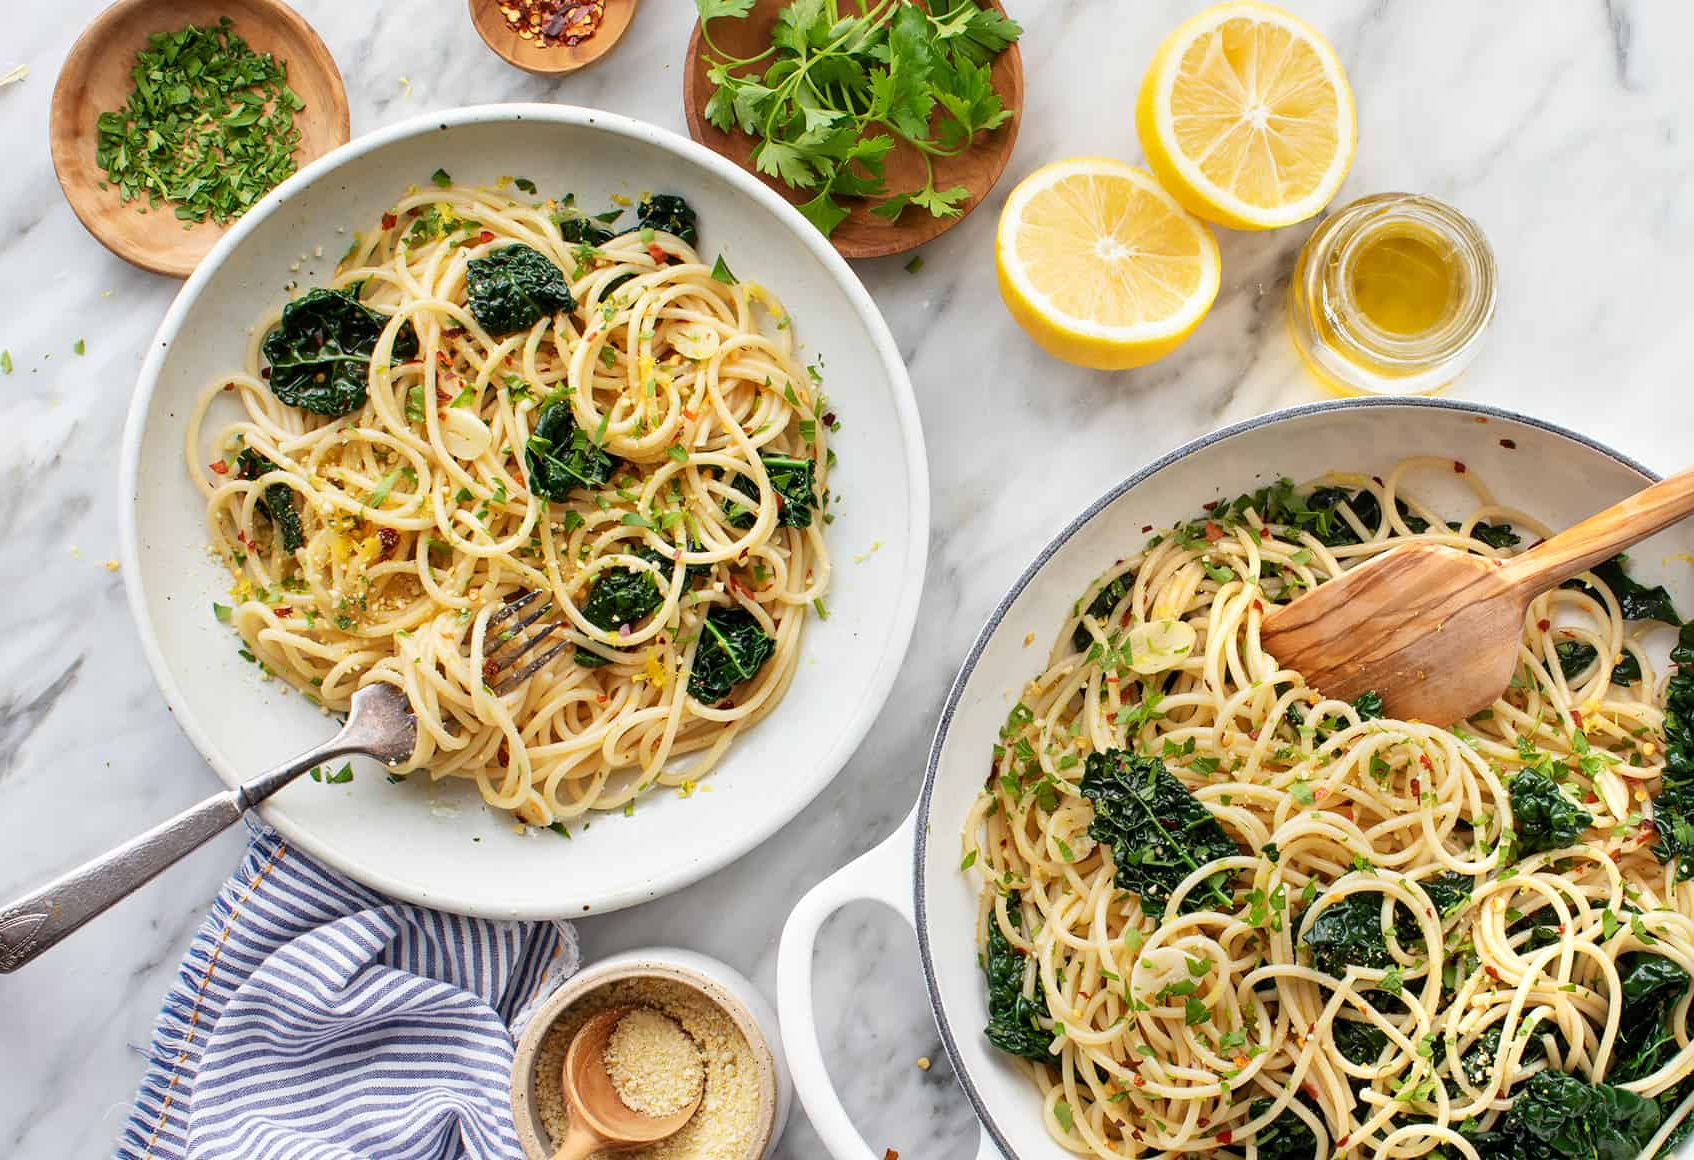 Spaghetti Aglio e Olio with Broccoli